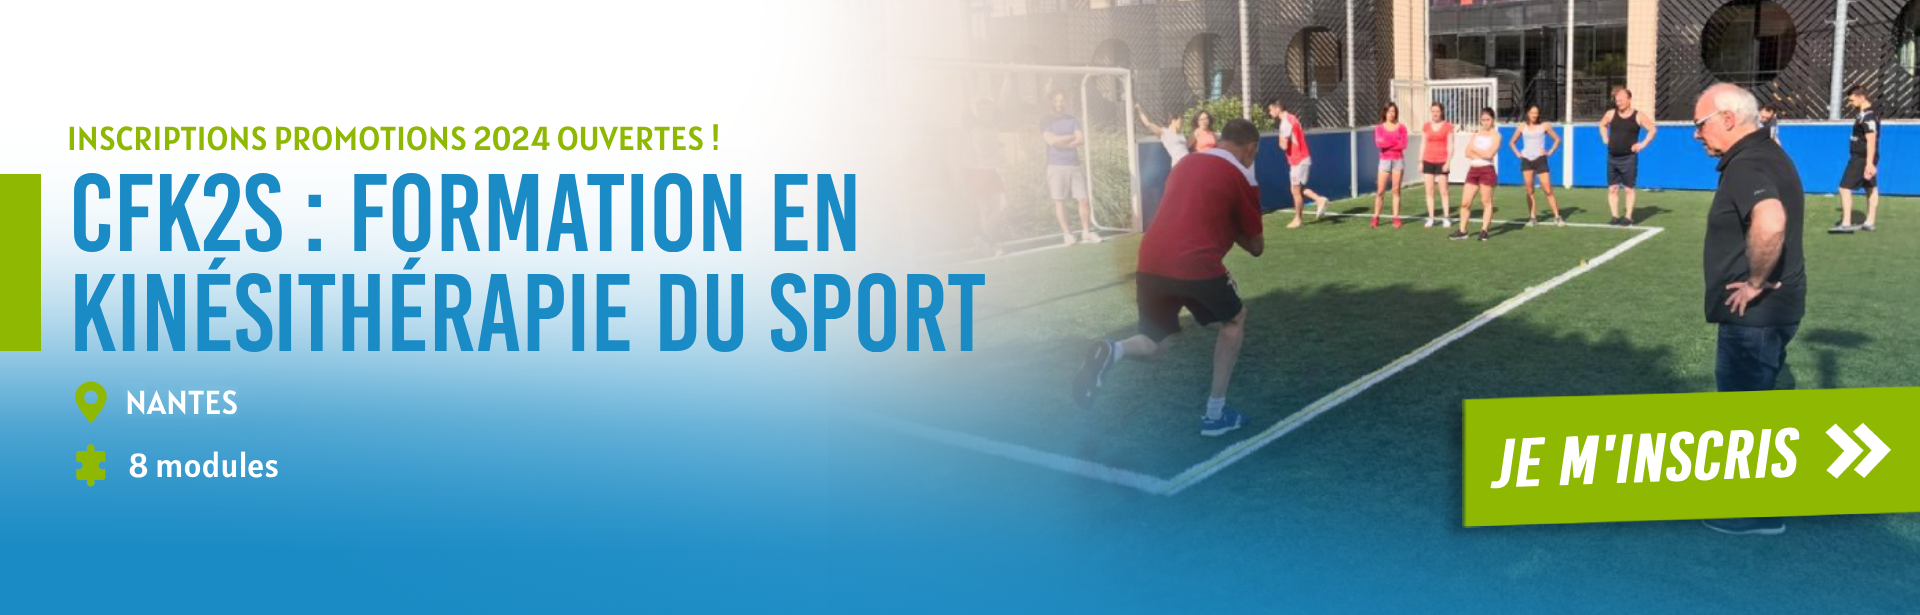 CEVAK - Formation kiné du sport Nantes kinésithérapeute du sport